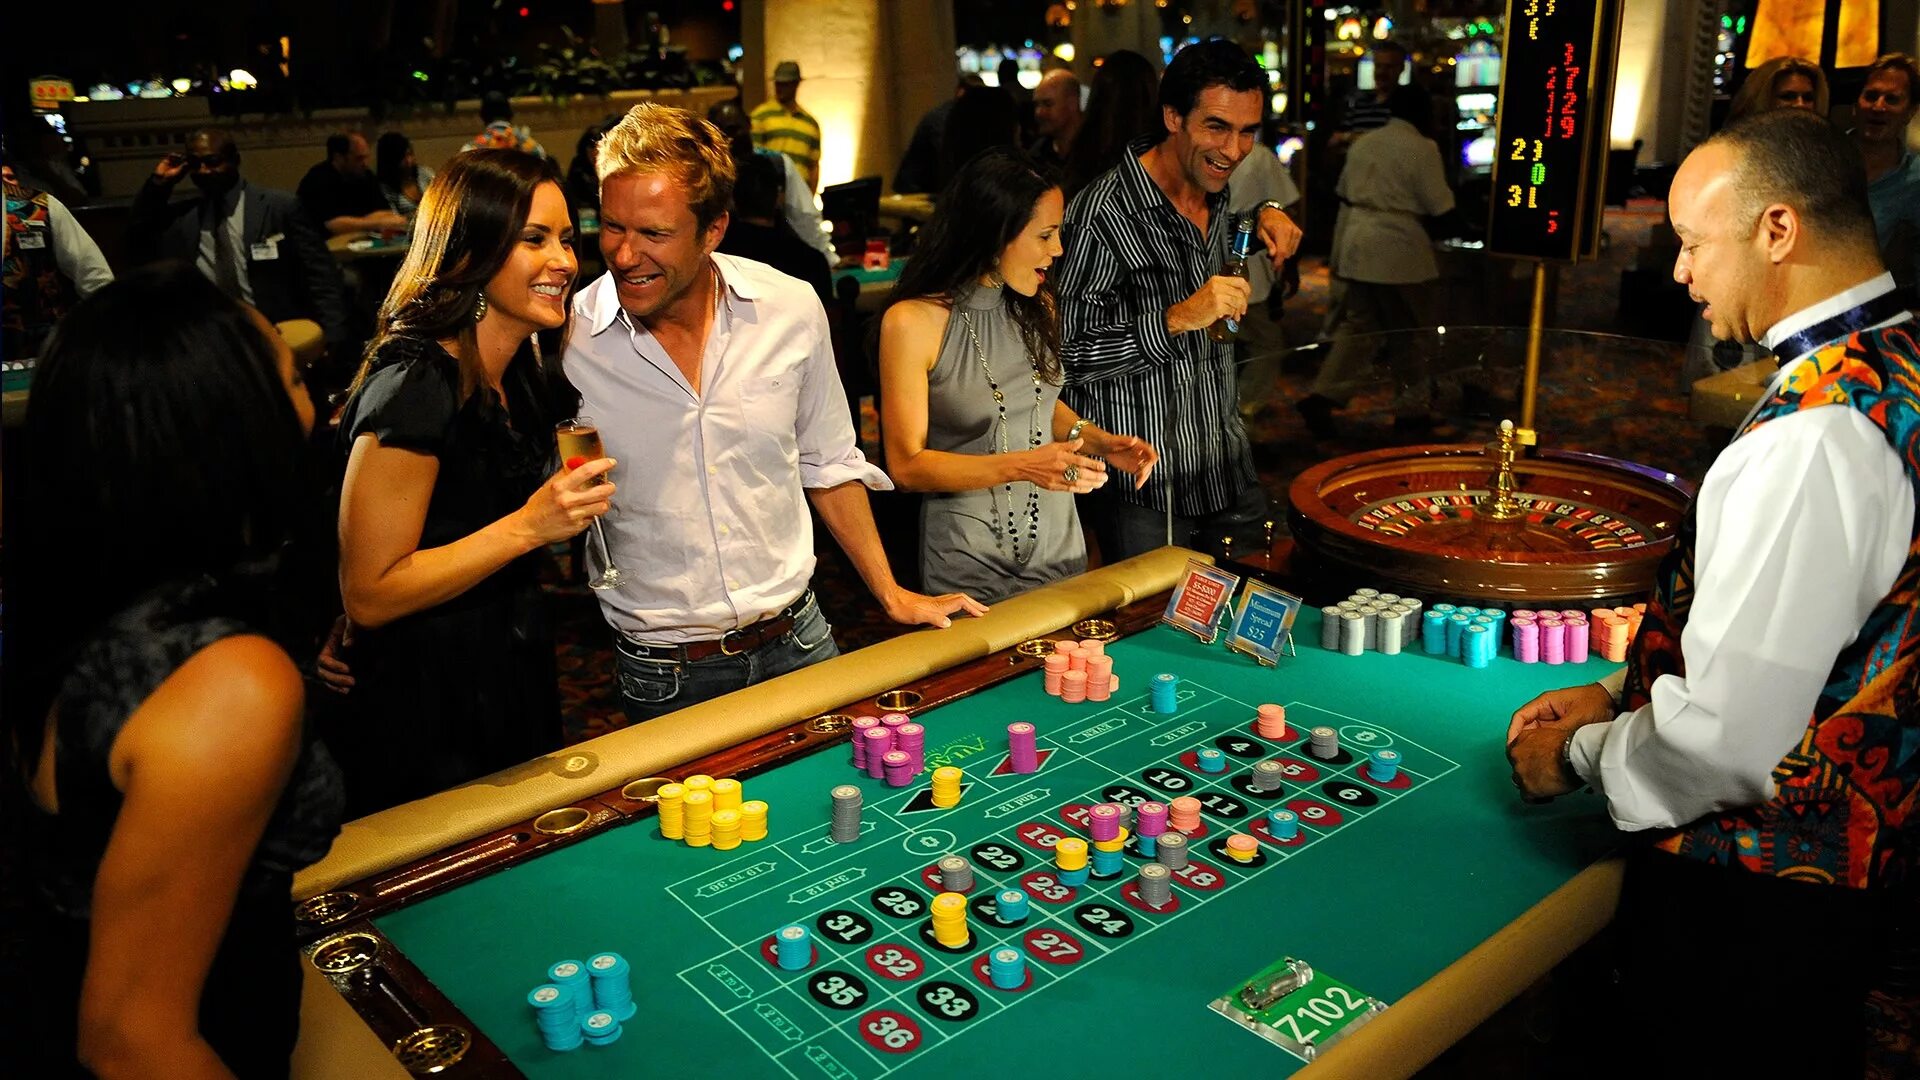 Казино, игры, Рулетка, Покер, Бинго. Фотосессия в казино. Казино Покер. Мир казино и азартных игр.